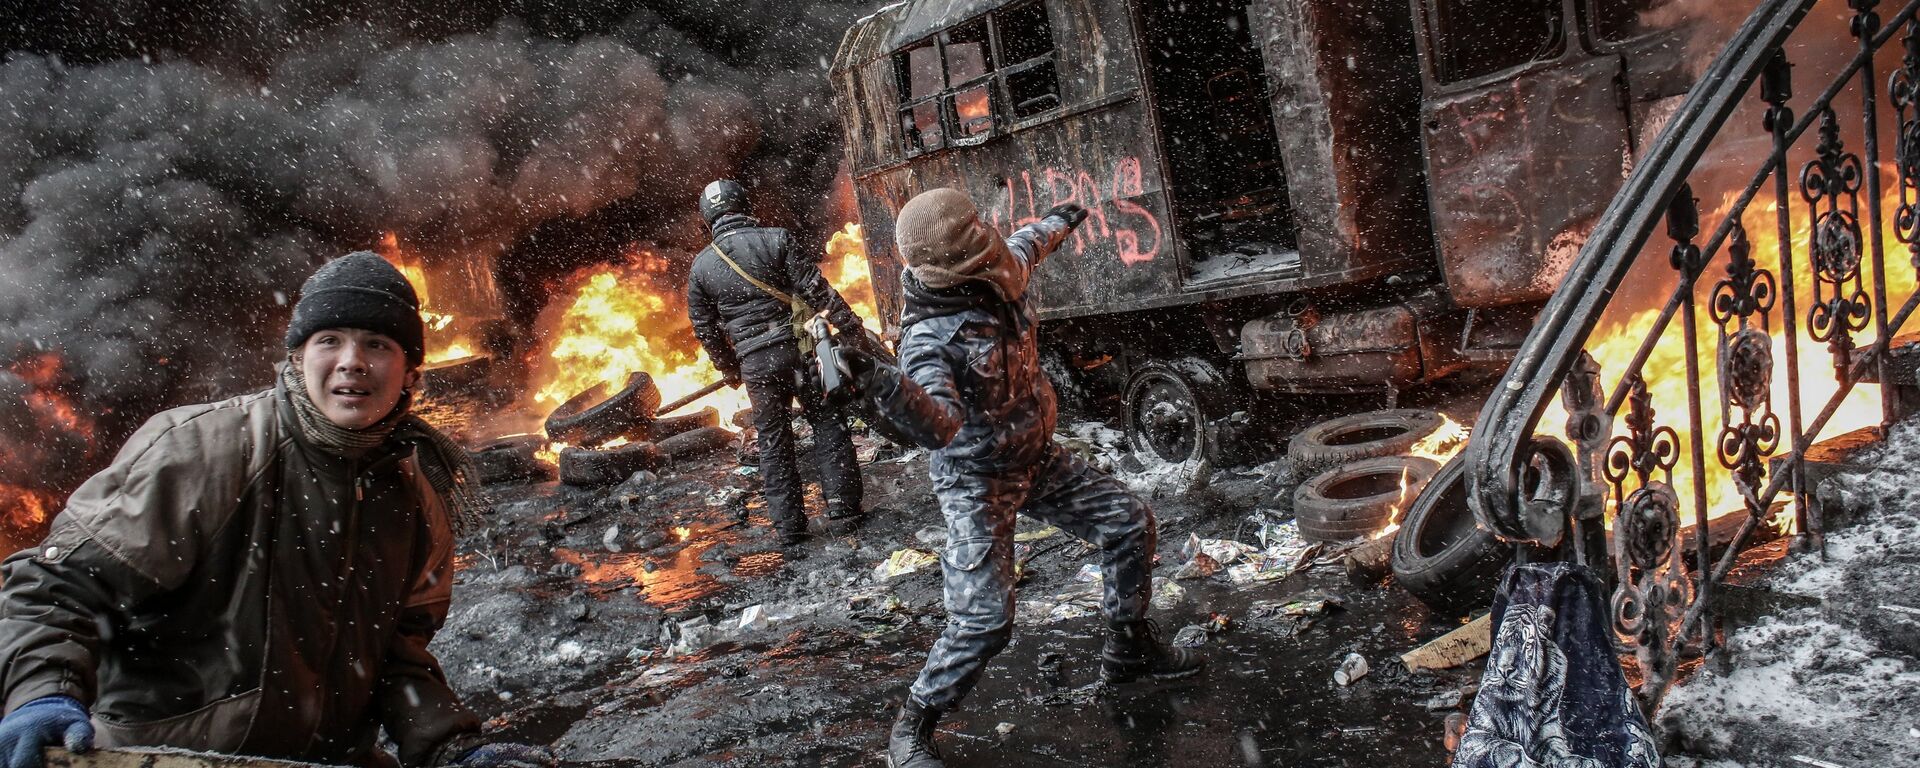 Partidarios de la integración europea de Ucrania, en enfrentamientos con unidades de policía, en el centro de Kiev - Sputnik Mundo, 1920, 12.10.2016